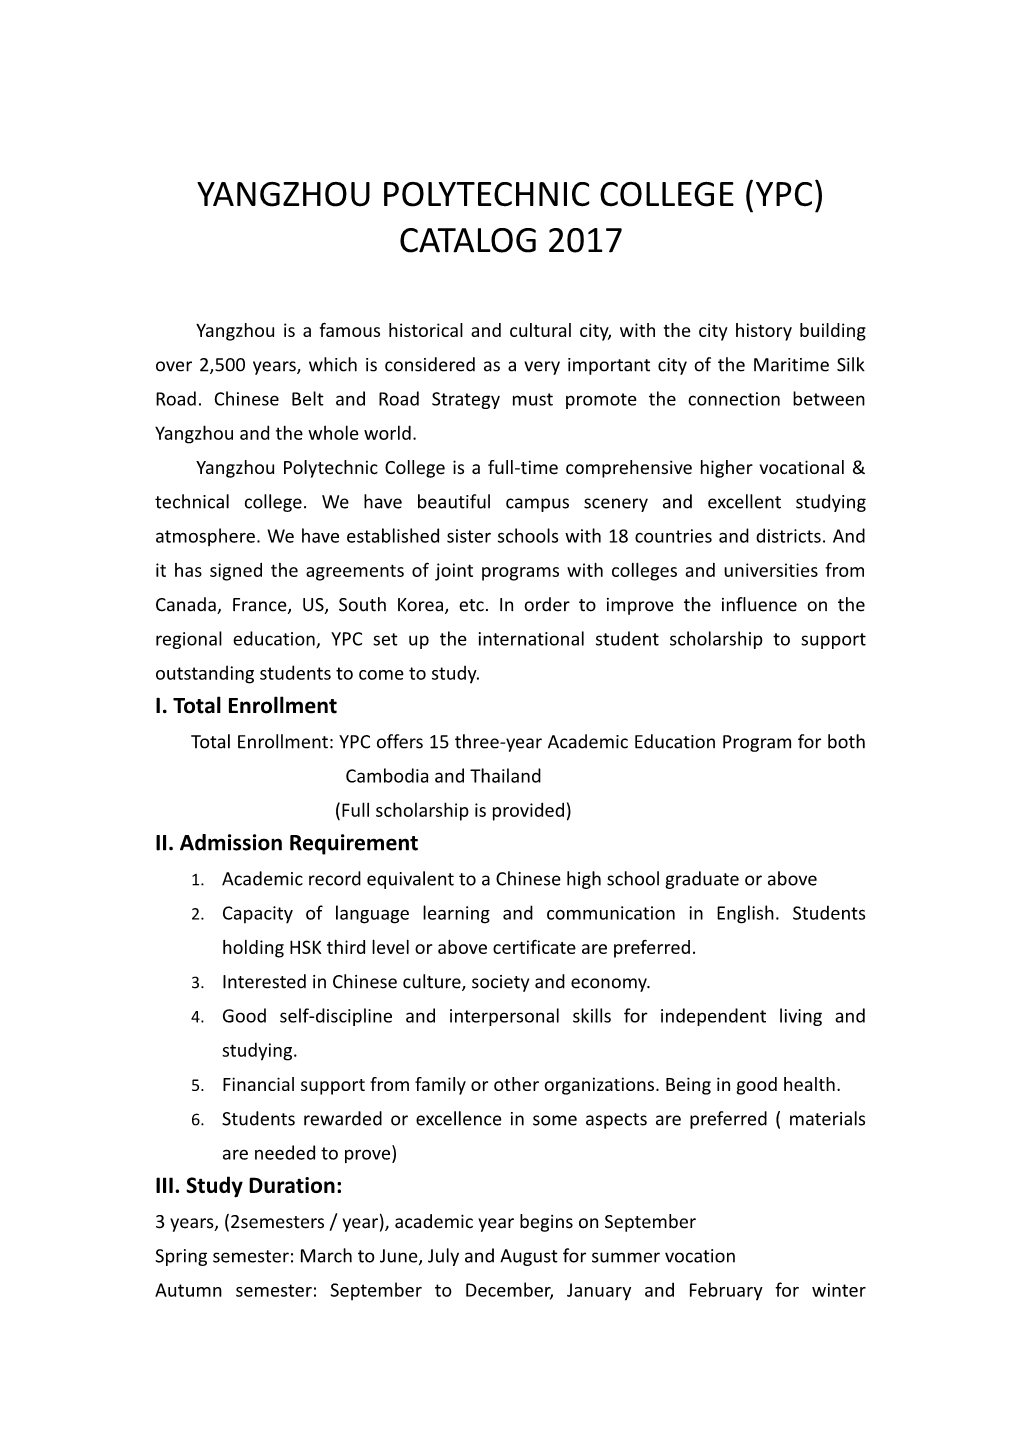 Yangzhou Polytechnic College (Ypc) Catalog 2017